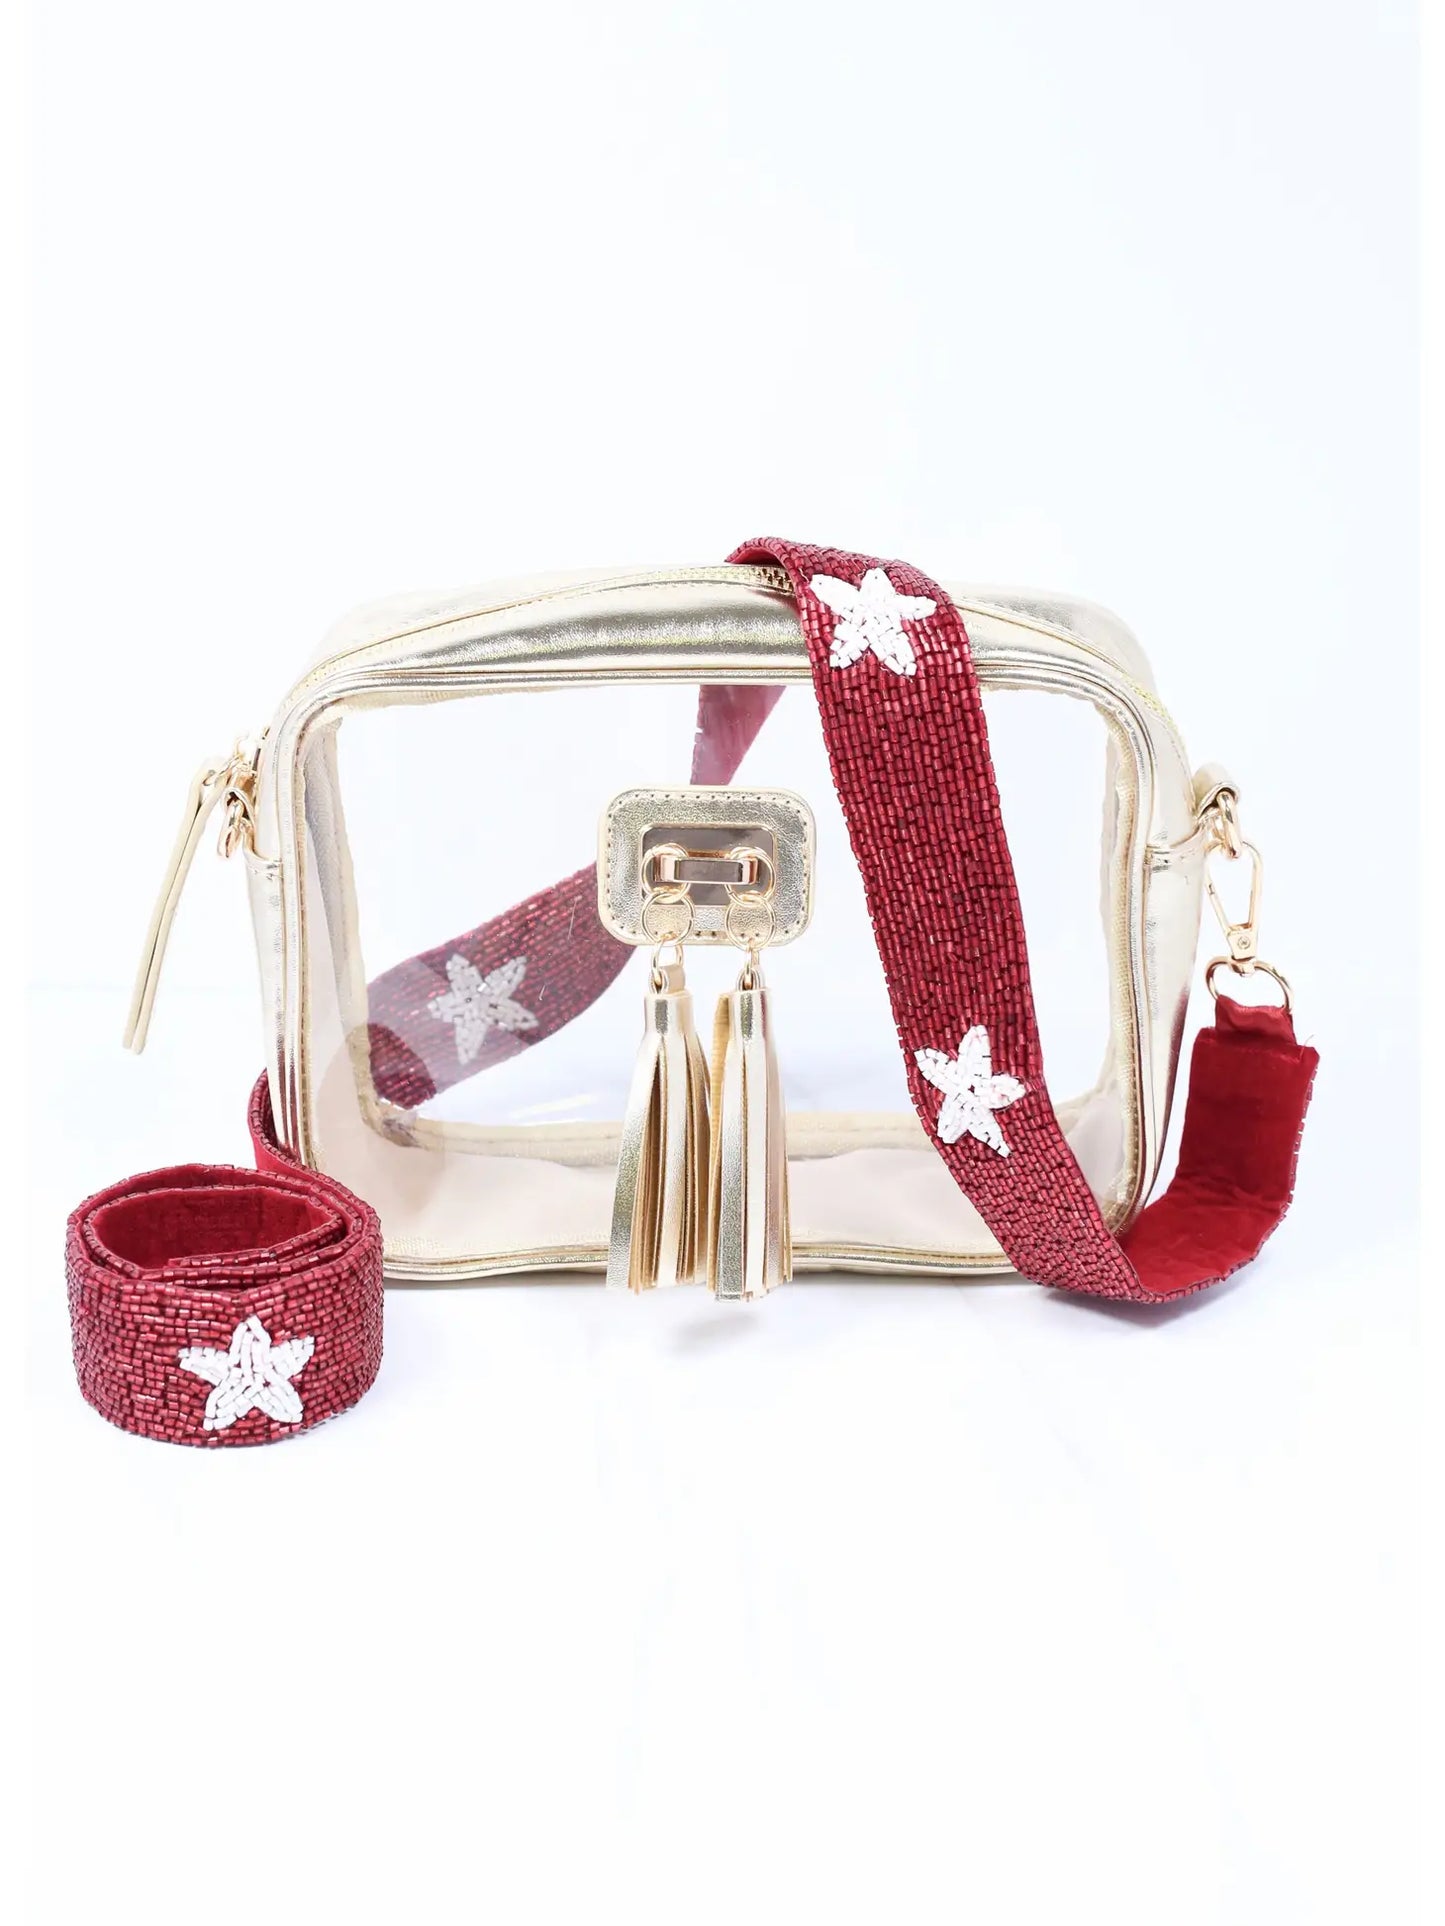 Beaded "Star" Handbag Strap